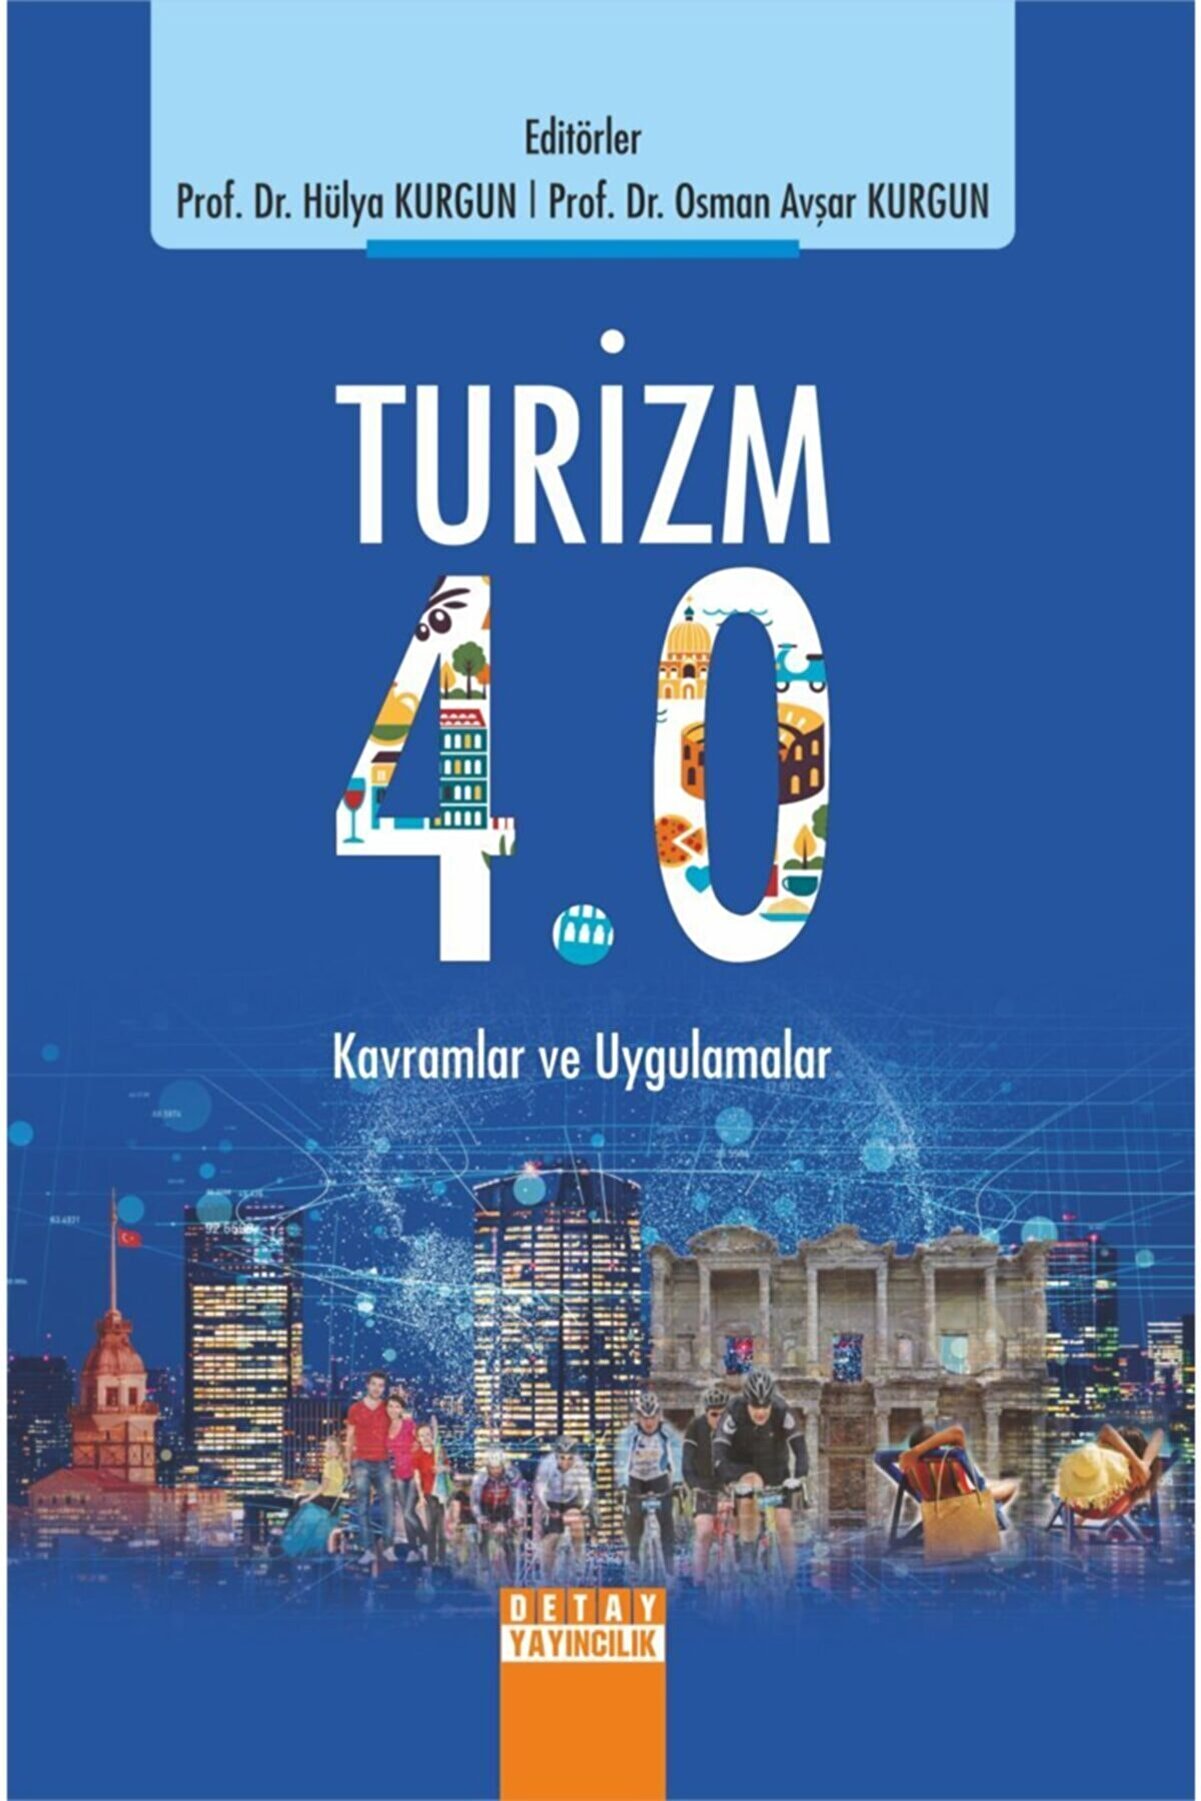 Detay Yayıncılık Turizm 4.0 Kavramlar Ve Uygulamalar / Hülya Kurgun - Osman Avşar Kurgun